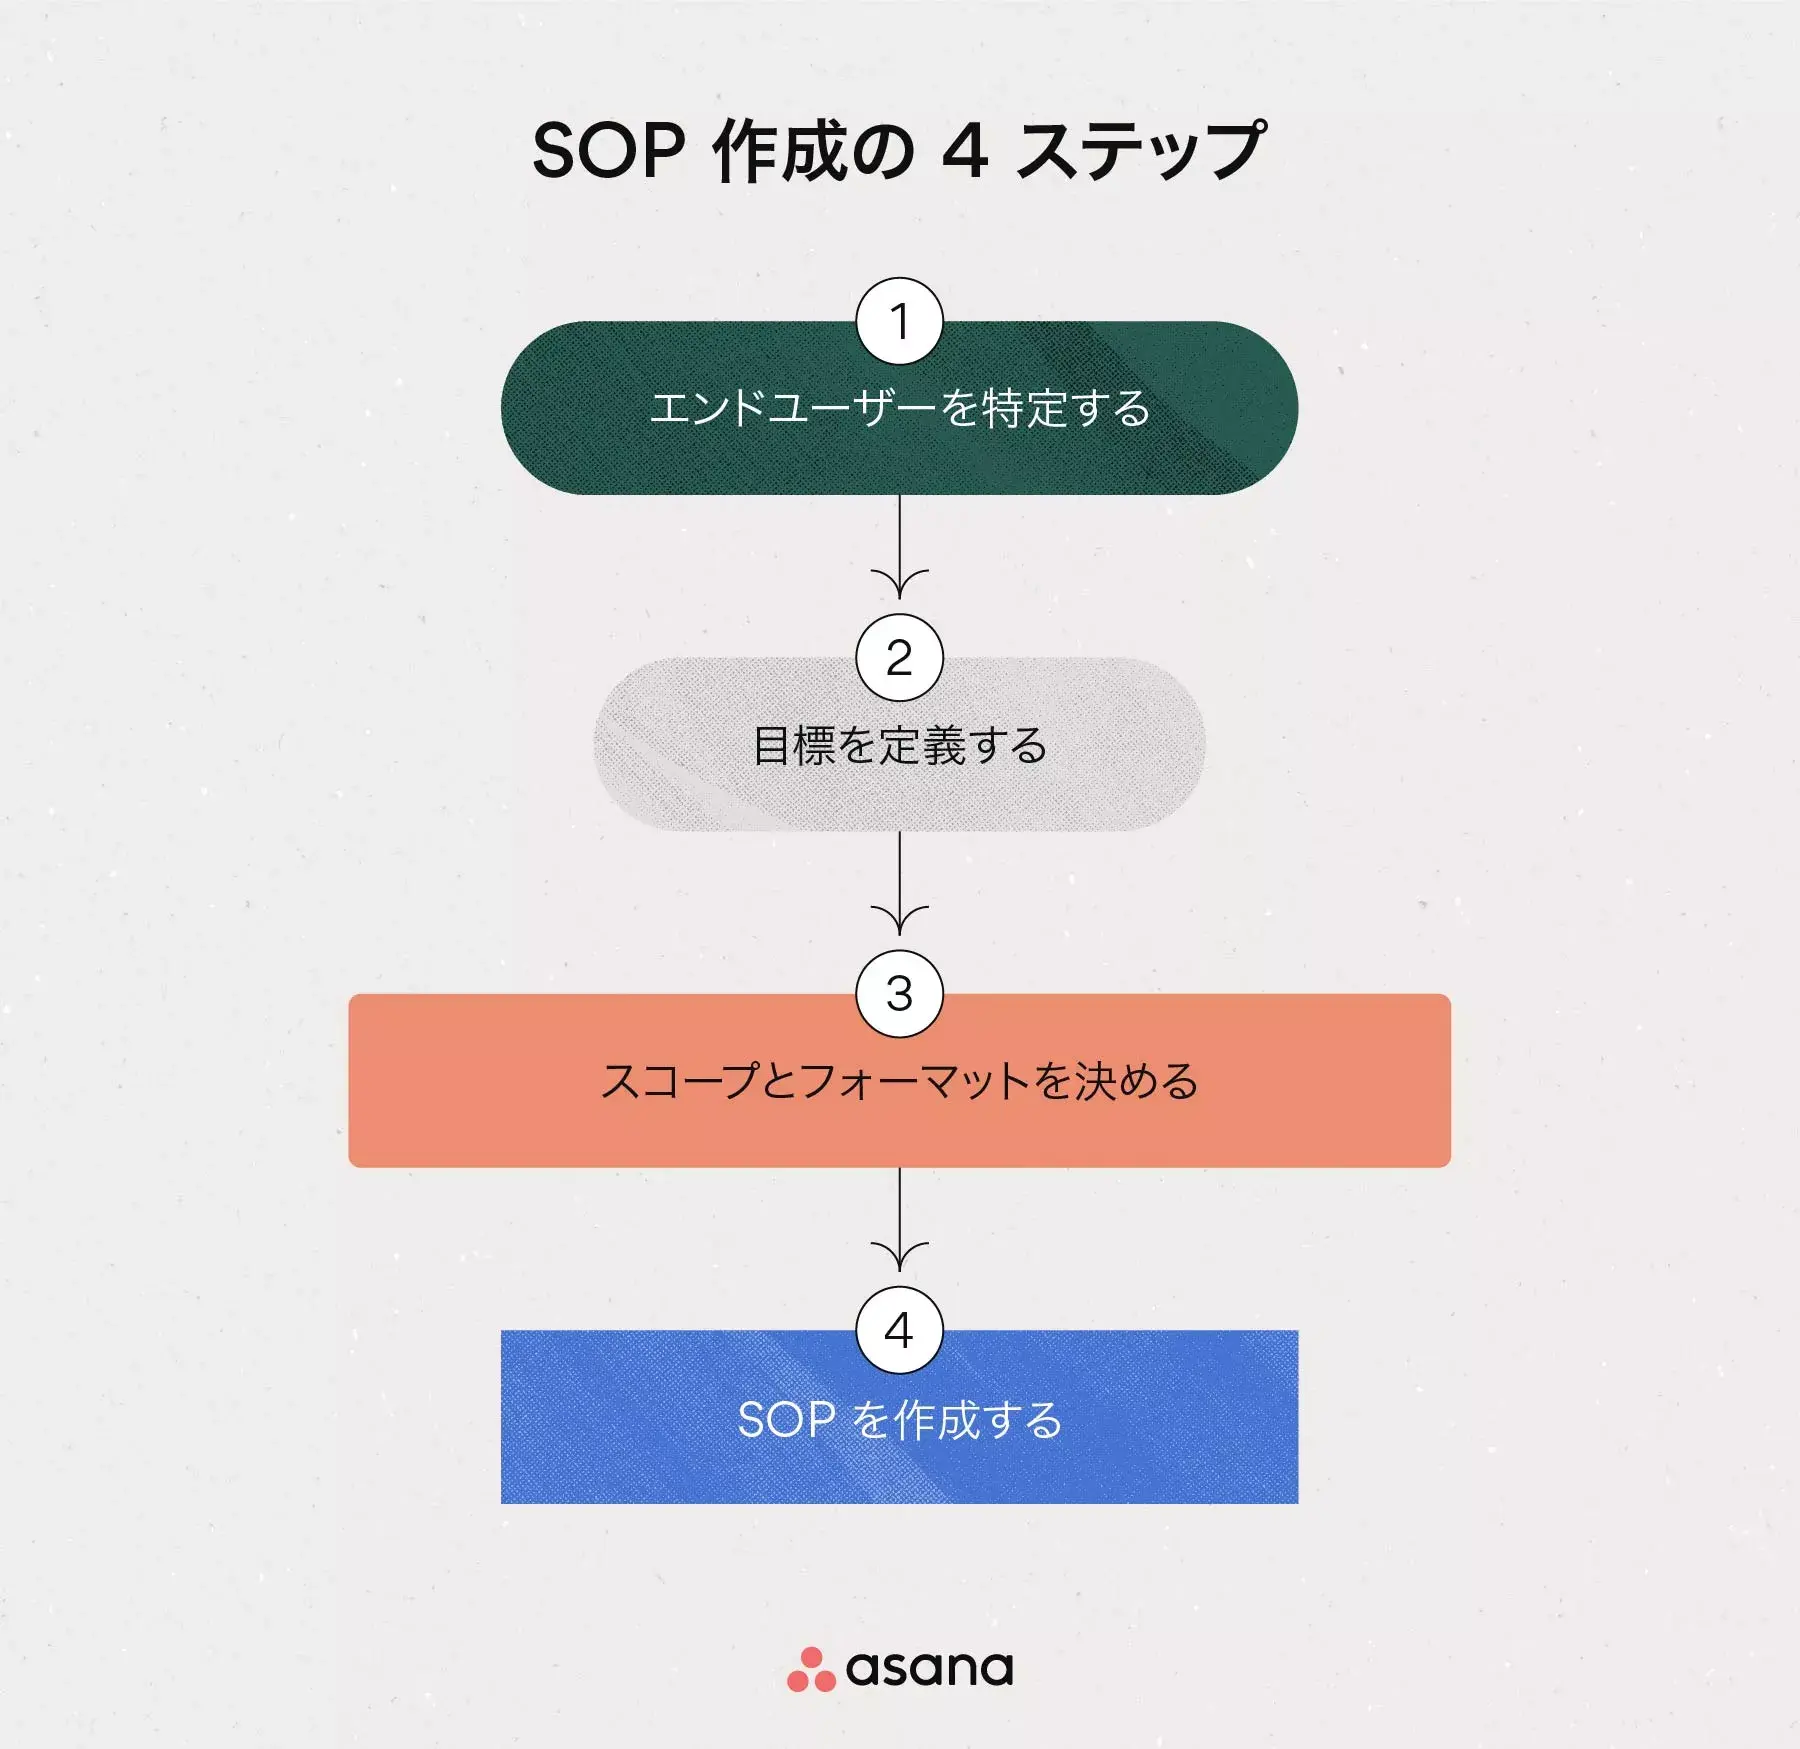 [インラインのイラスト] SOP を作成するための 4 ステップ (インフォグラフィック)